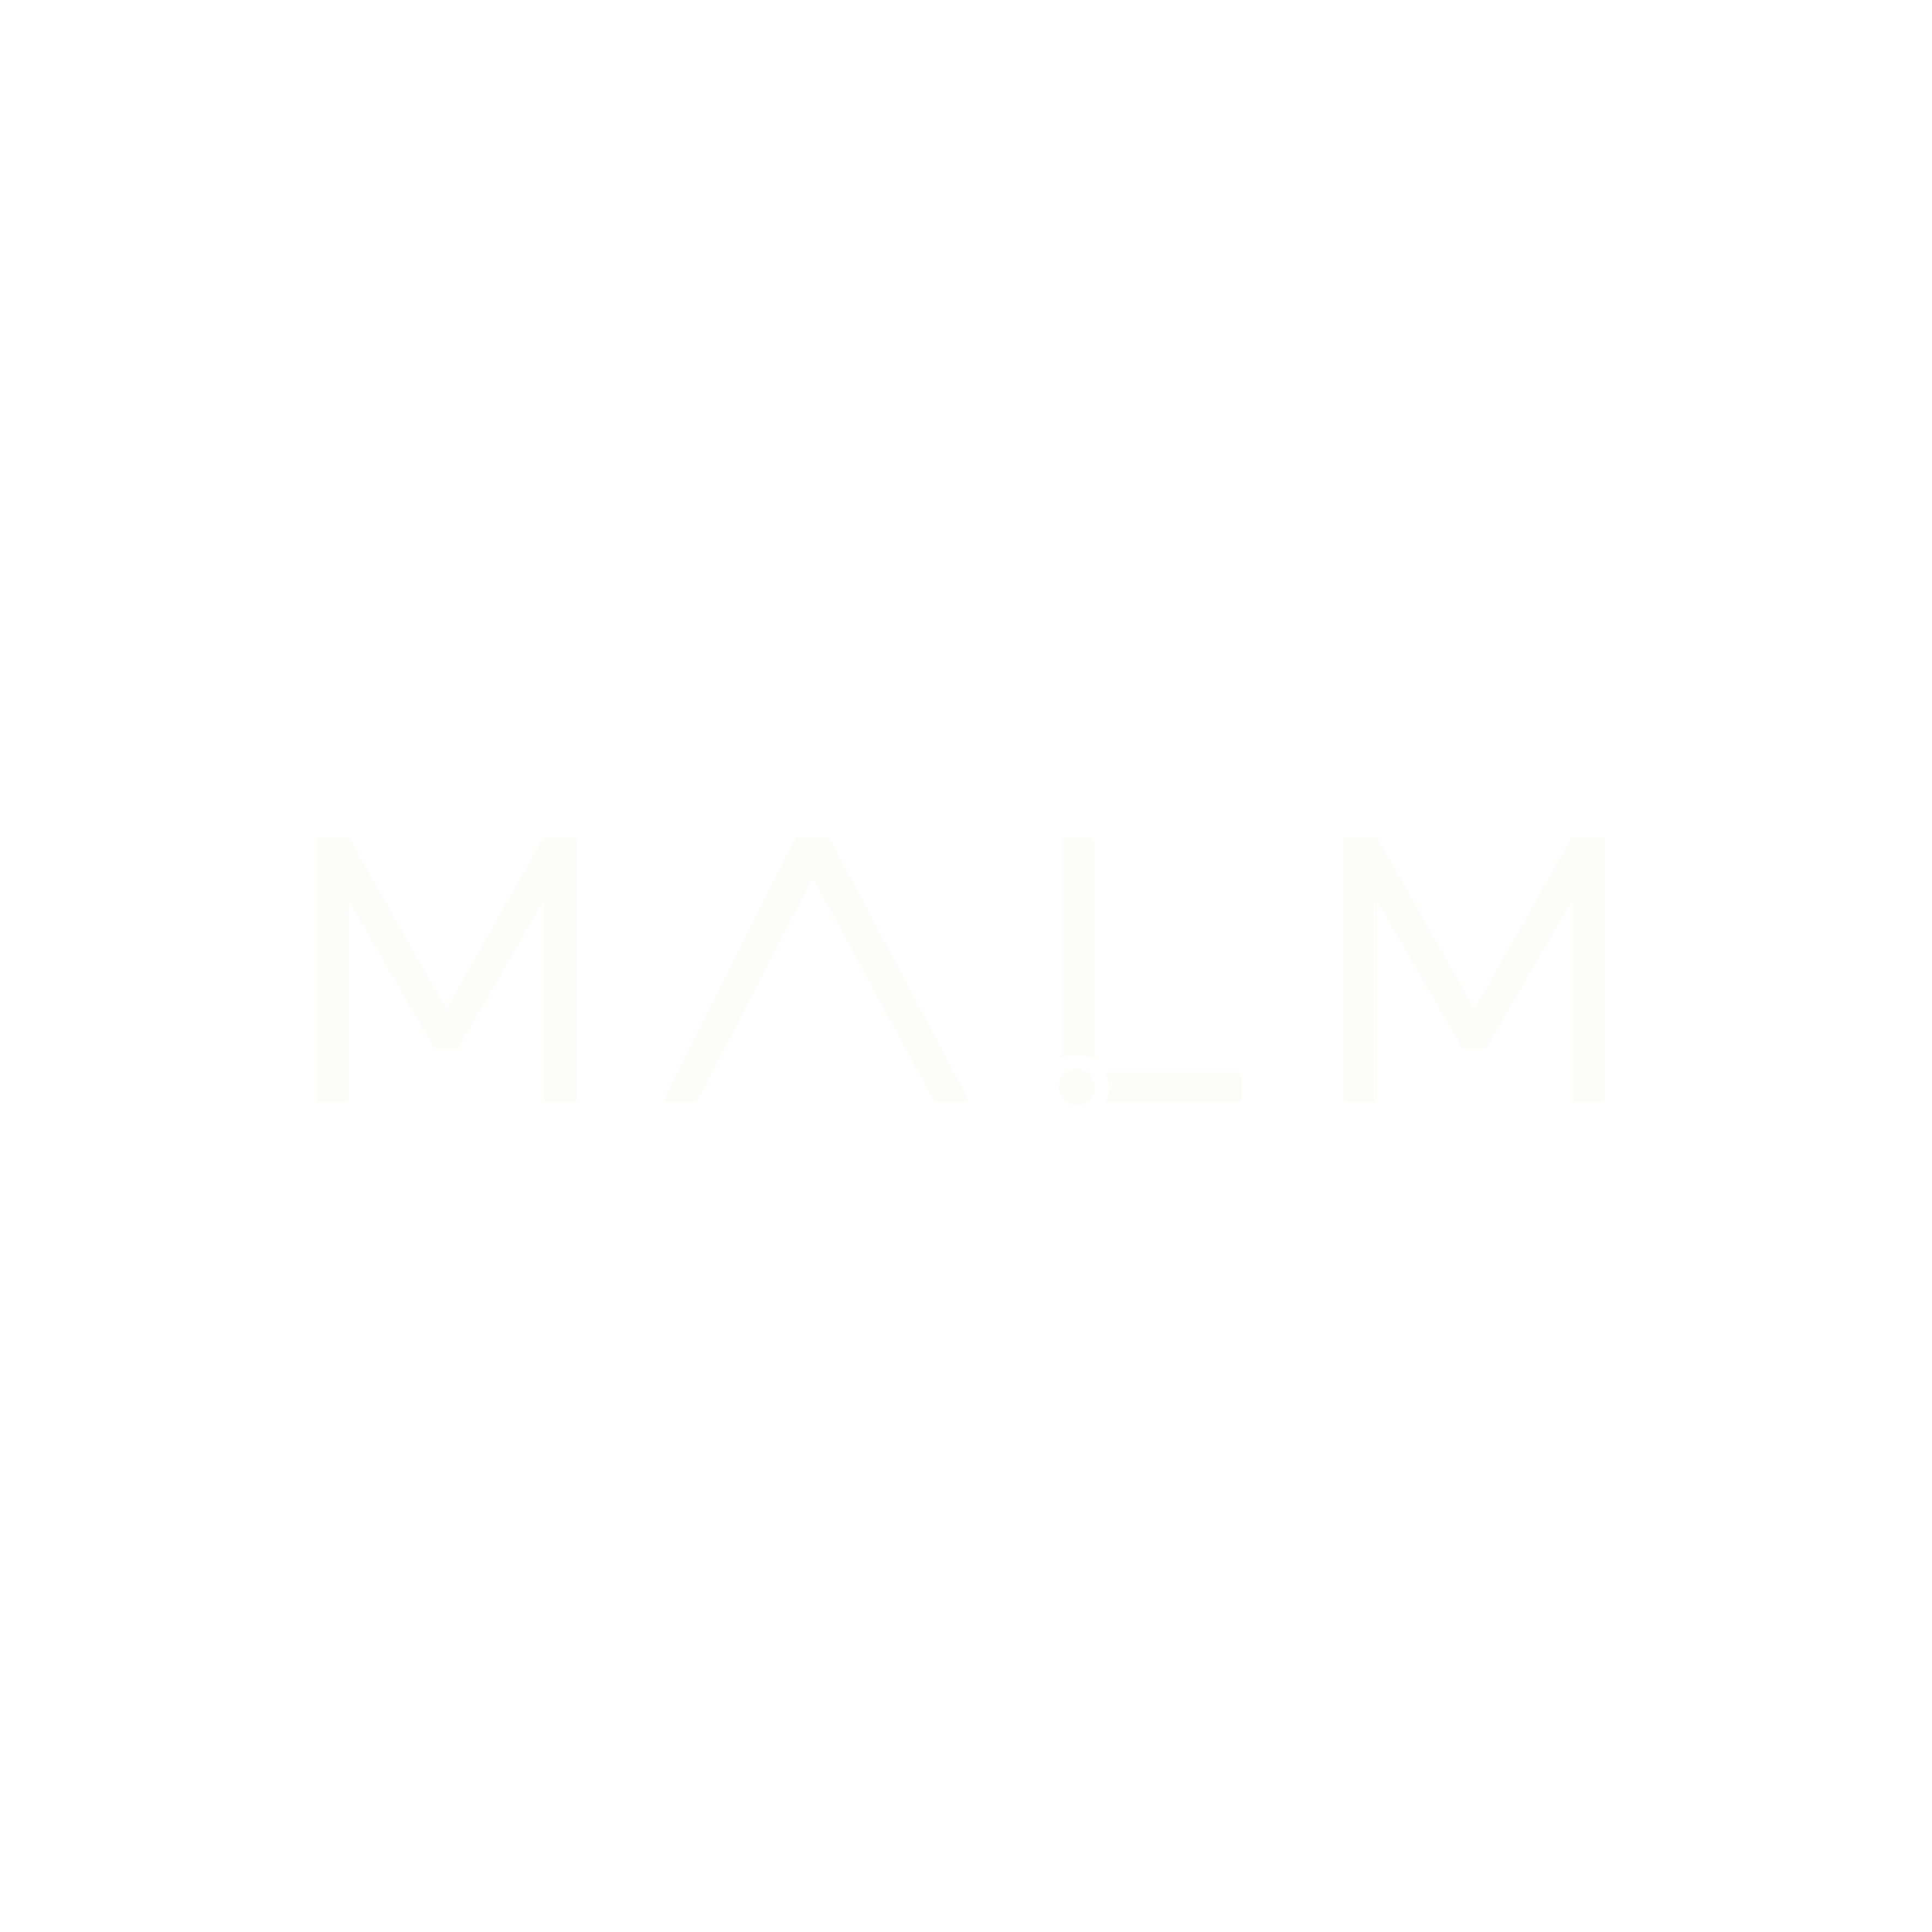 Malm